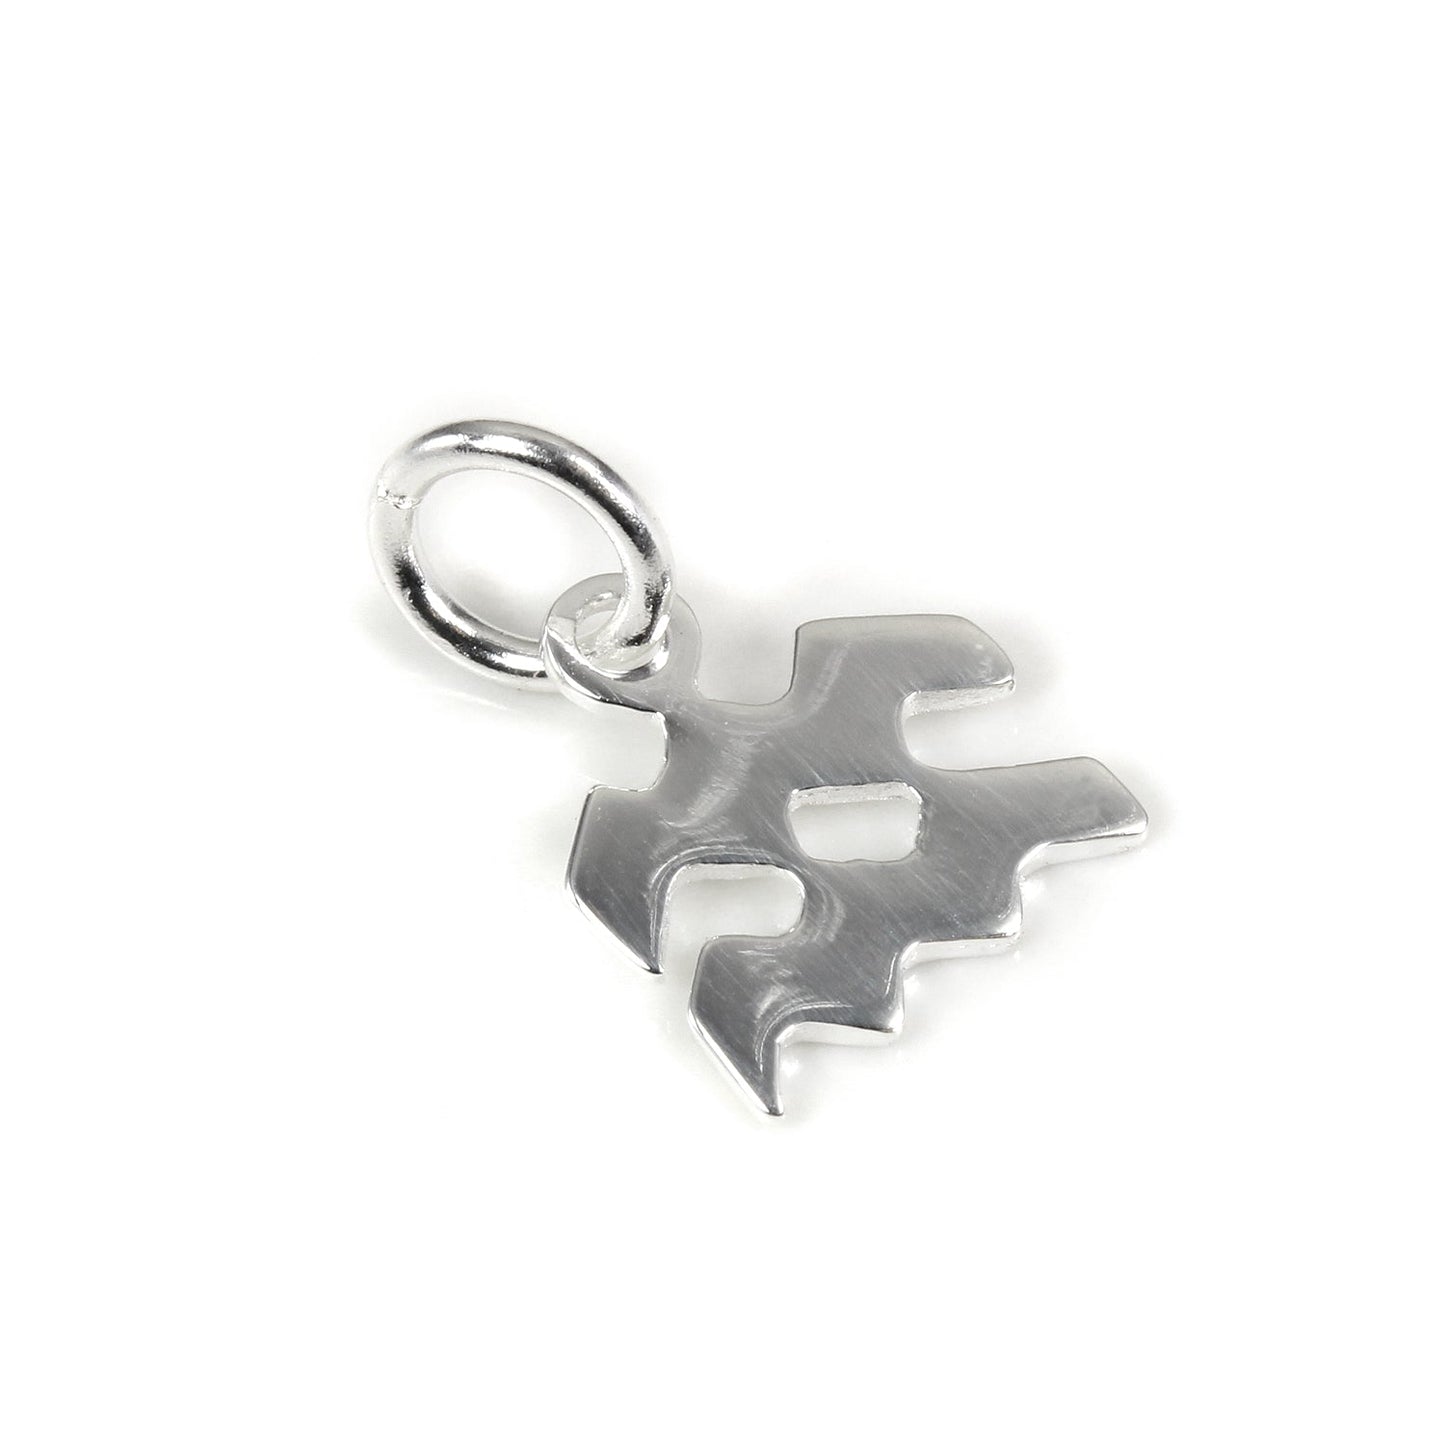 Small Sterling Silver 2D Aquarius Symbol Charm